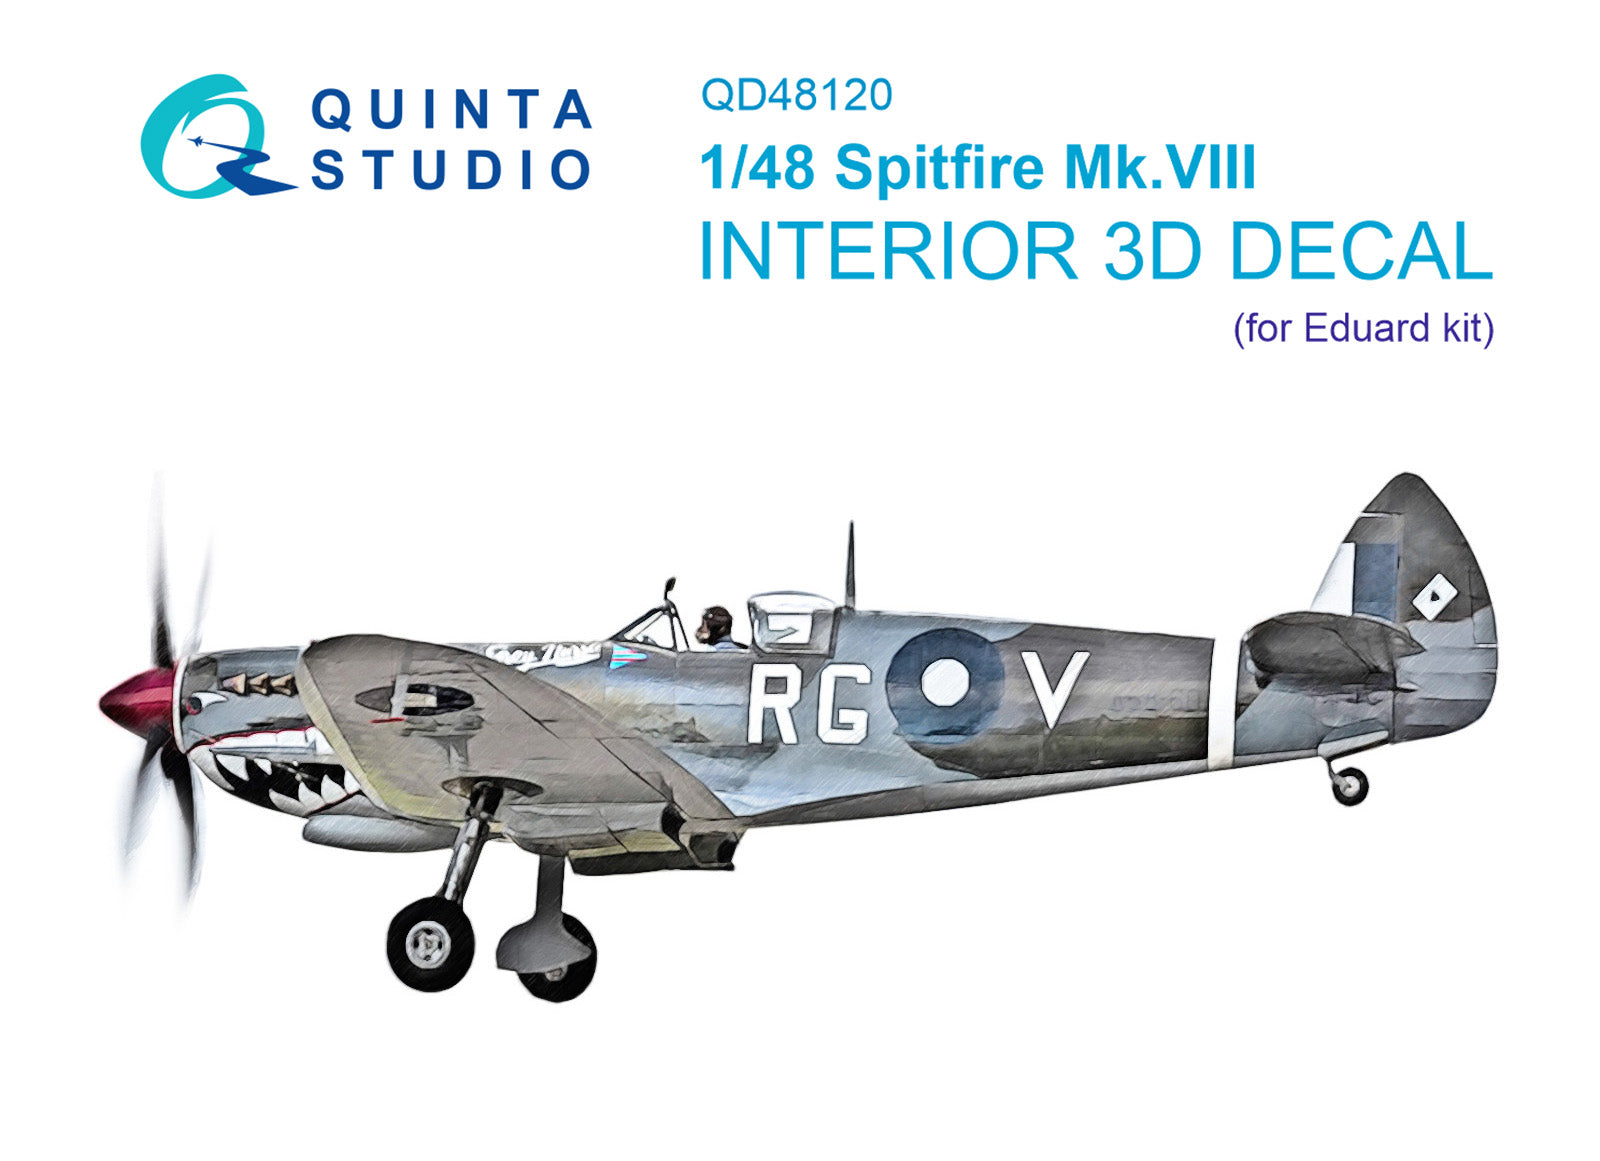 Quinta Studio - 1/48 Spitfire Mk.XVIII - QD48120 for Eduard kit